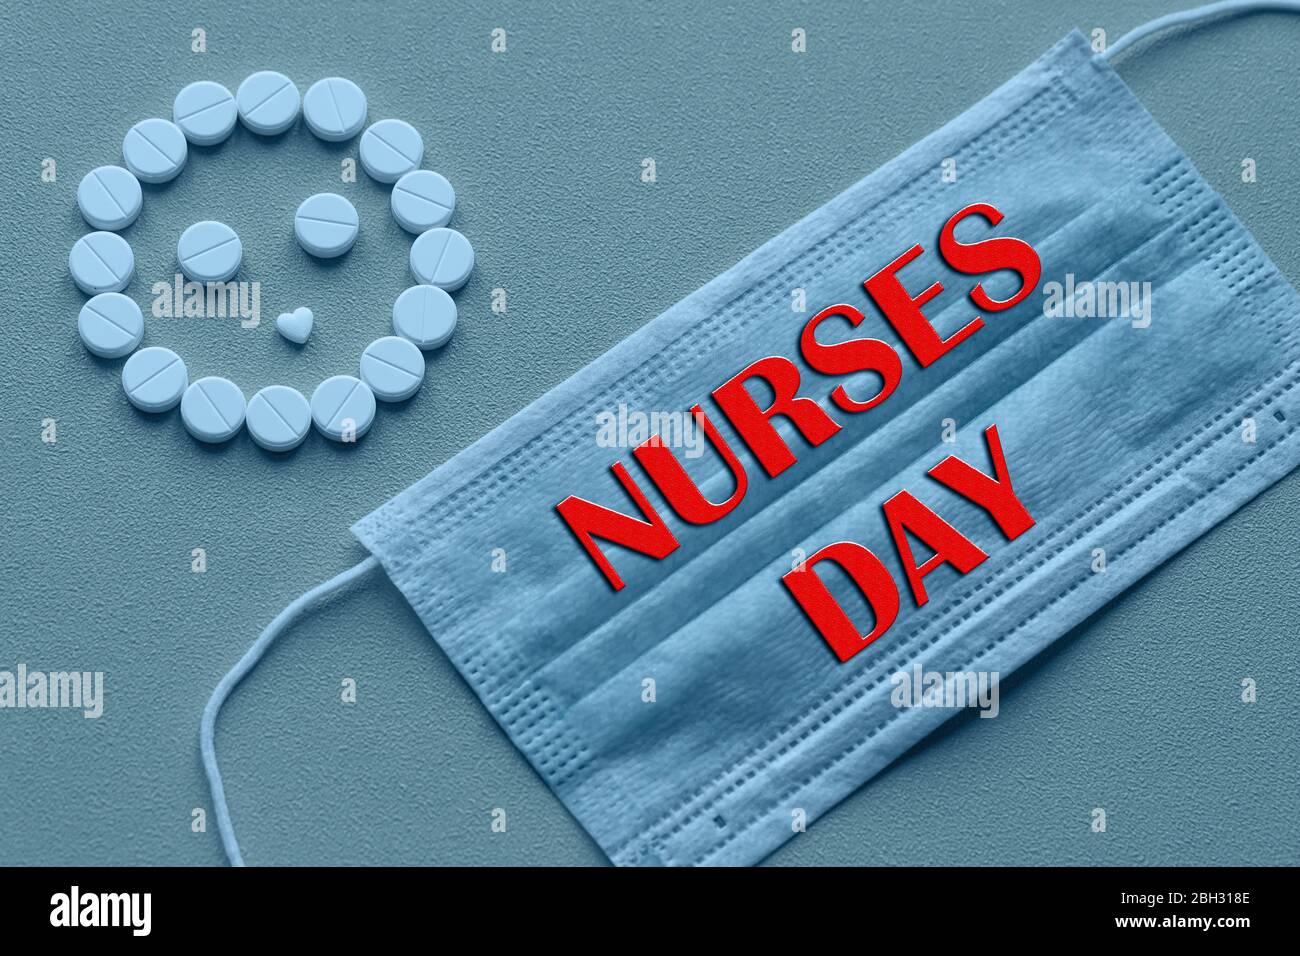 Weiße Tafeln sind in Form eines Smiley-Gesichts auf gelbem Hintergrund angeordnet. Glückwunschtext zum Krankenschwester-Feiertag. Gesundheitswesen Stockfoto